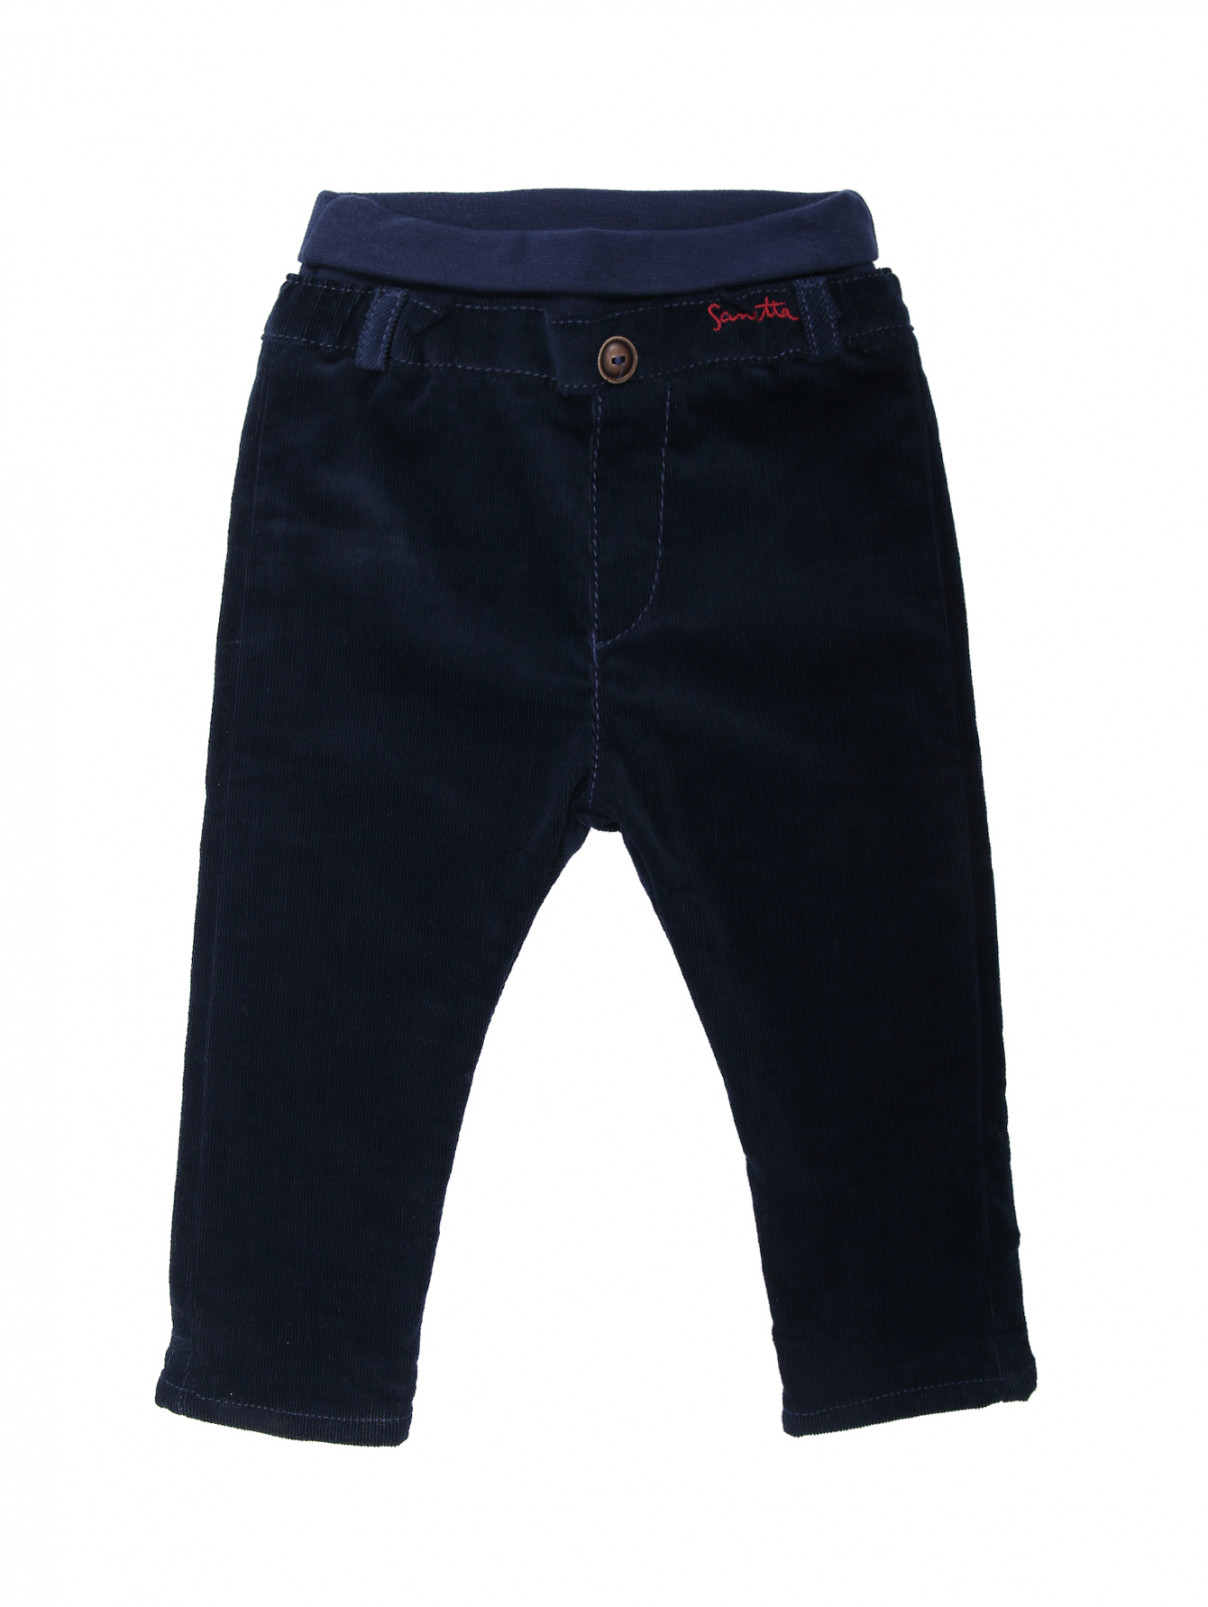 Вельветовые брюки на резинке Sanetta  –  Общий вид  – Цвет:  Синий